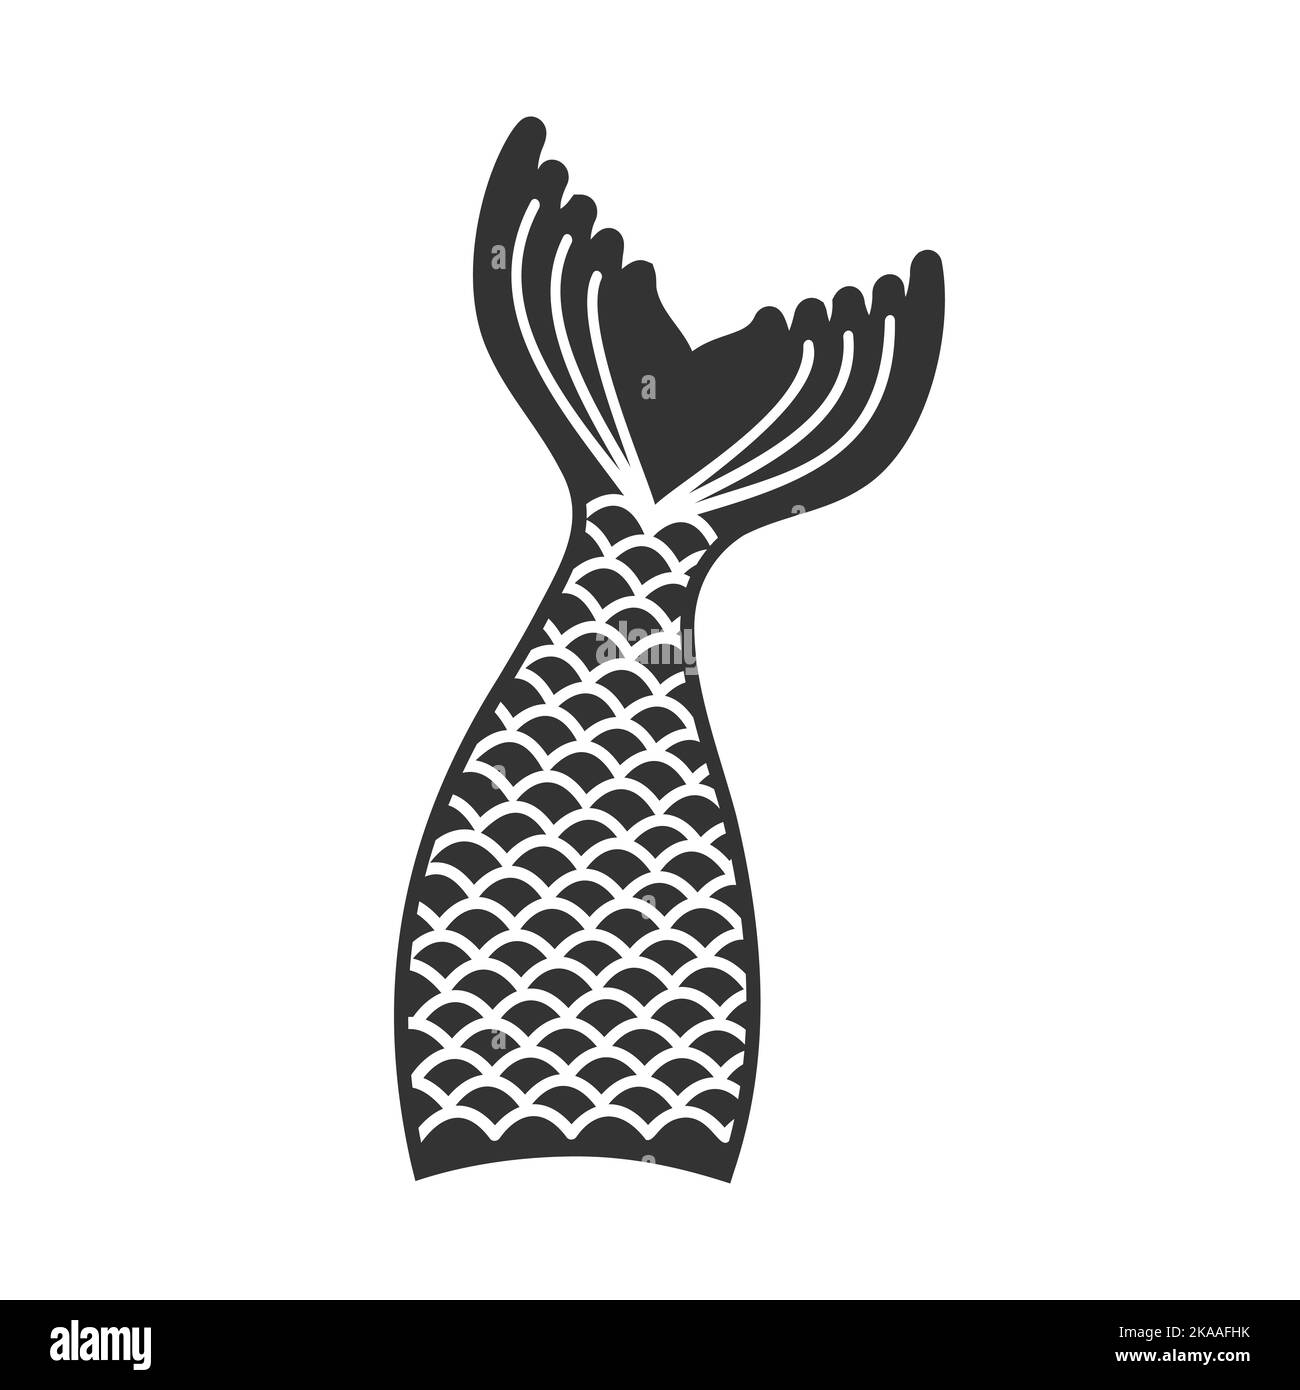 Meerjungfrau Schwanz Silhouette. Requisiten für Mädchenparty, Grußkarte oder T-Shirt-Print isoliert auf weißem Hintergrund. Vektorgrafik. Stock Vektor